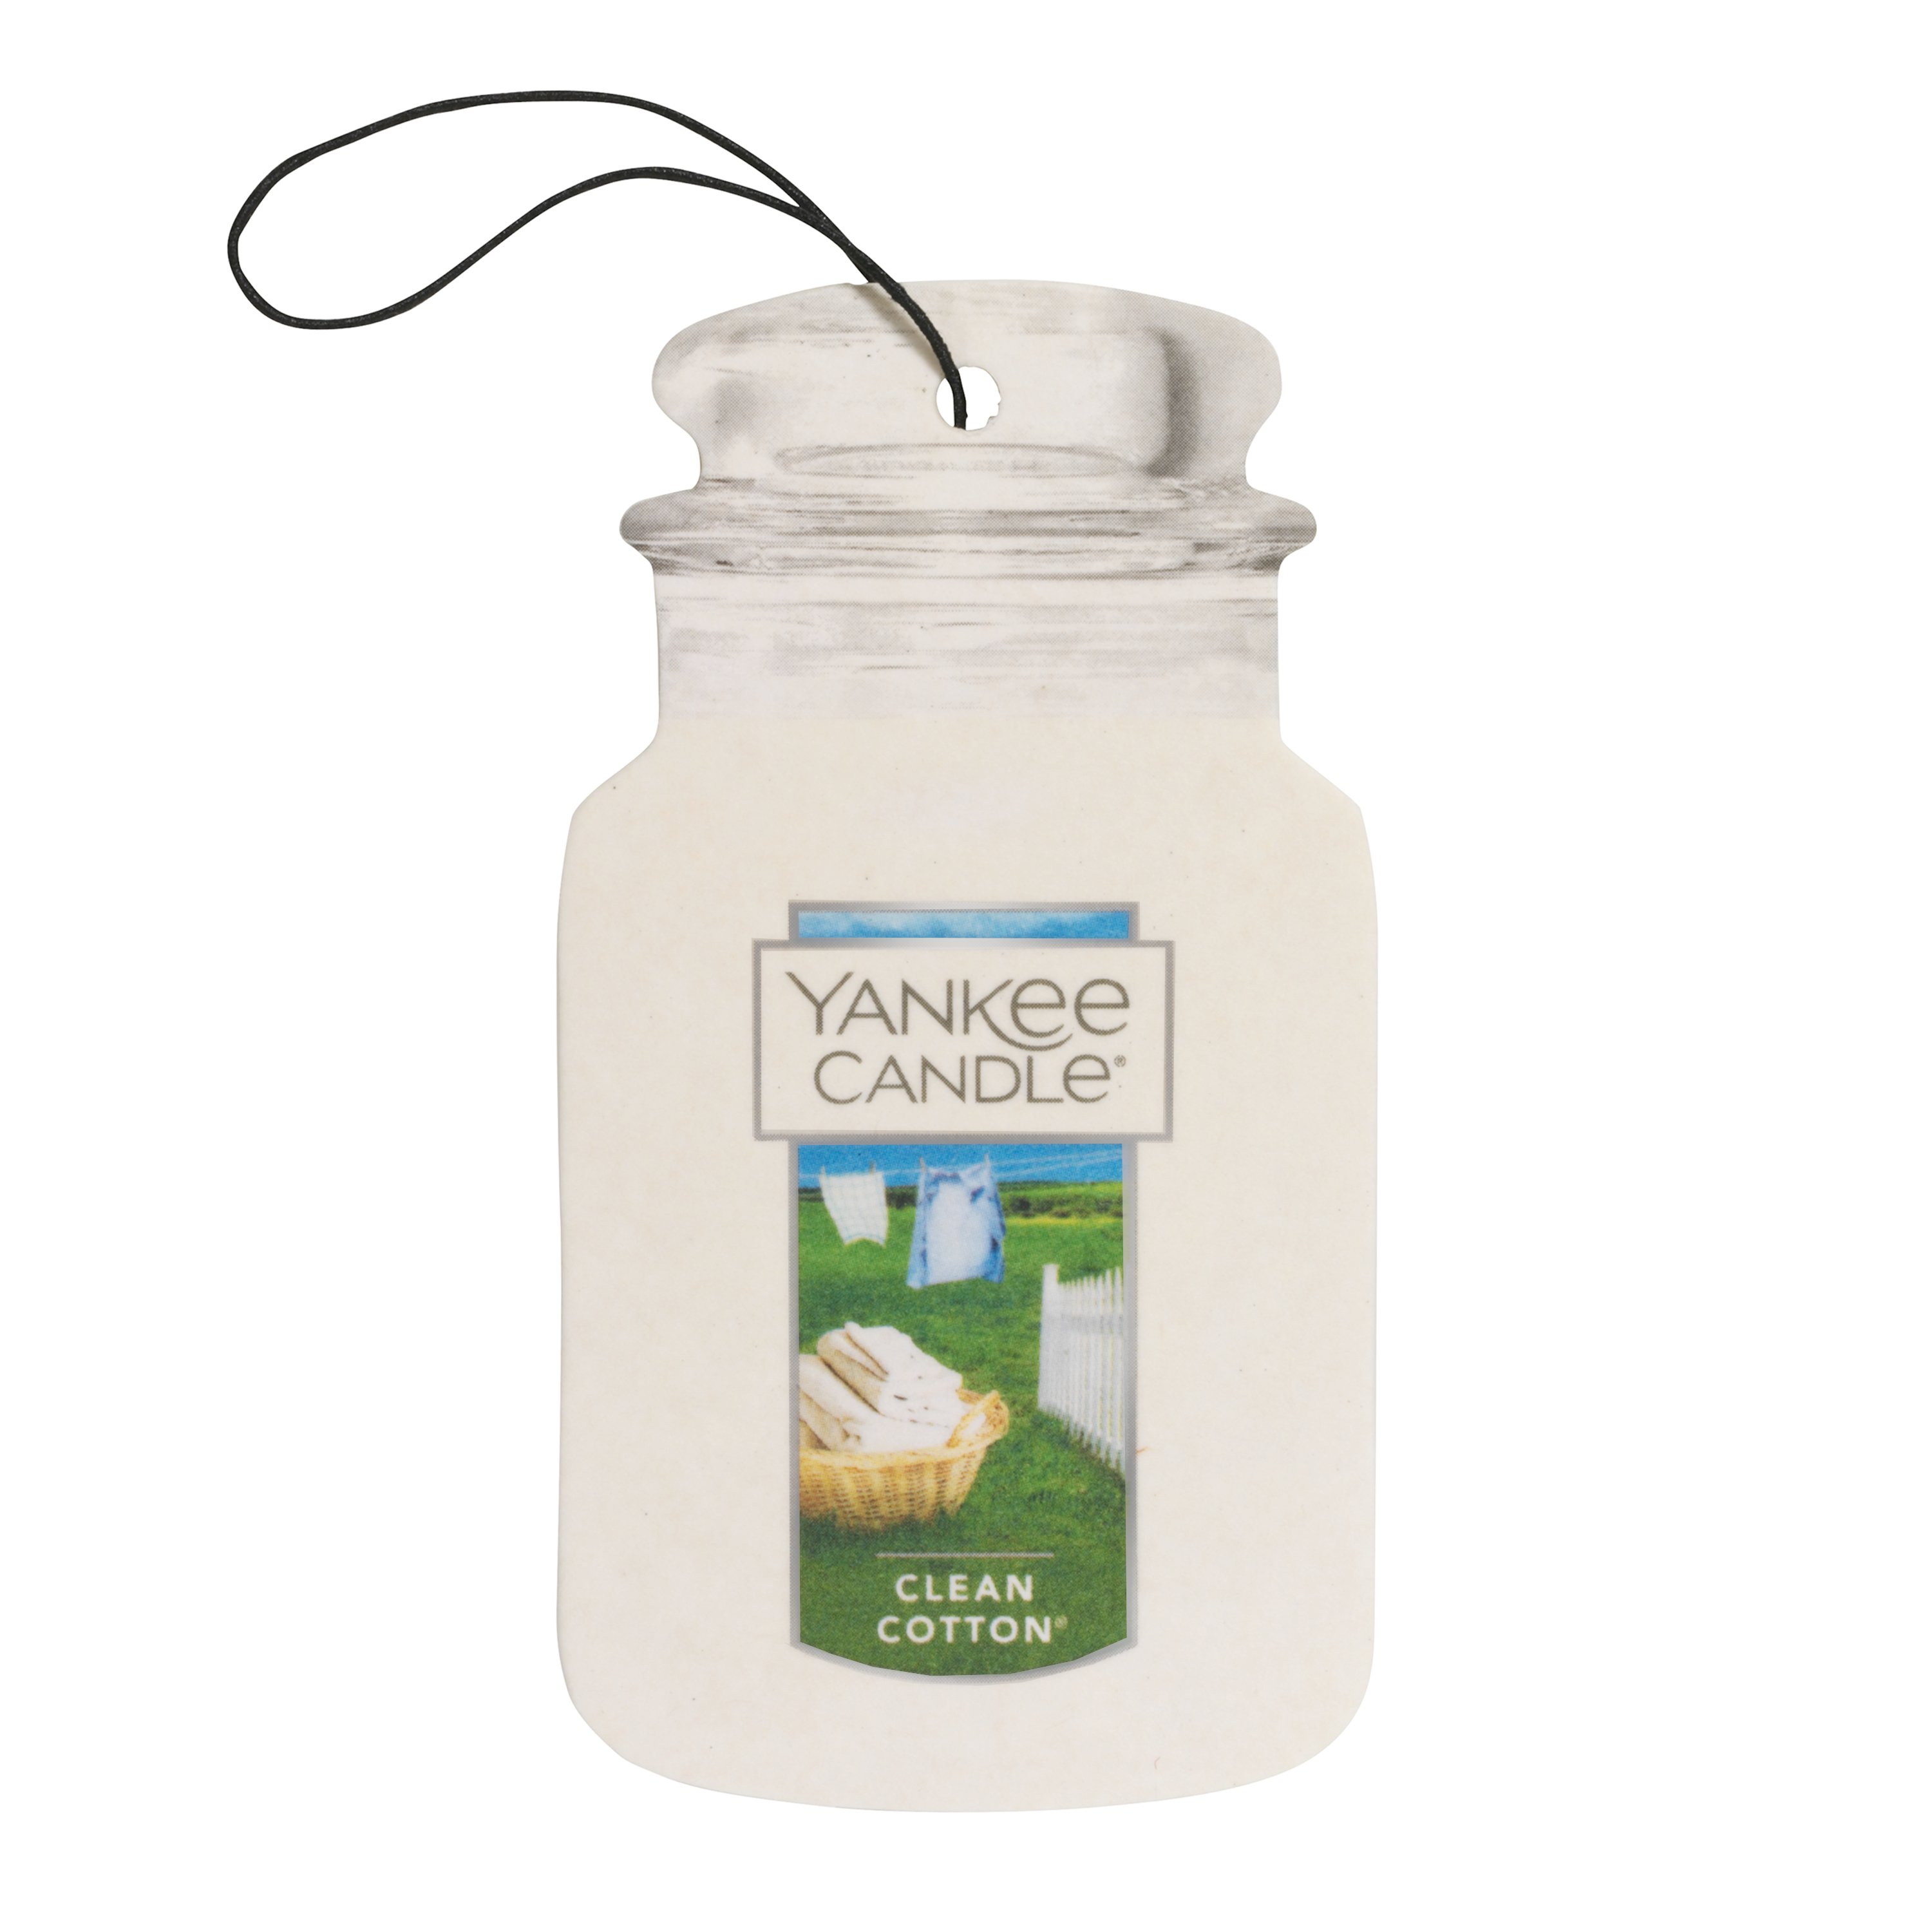 Yankee Candle Car Jar Air Freshener, Clean Cotton